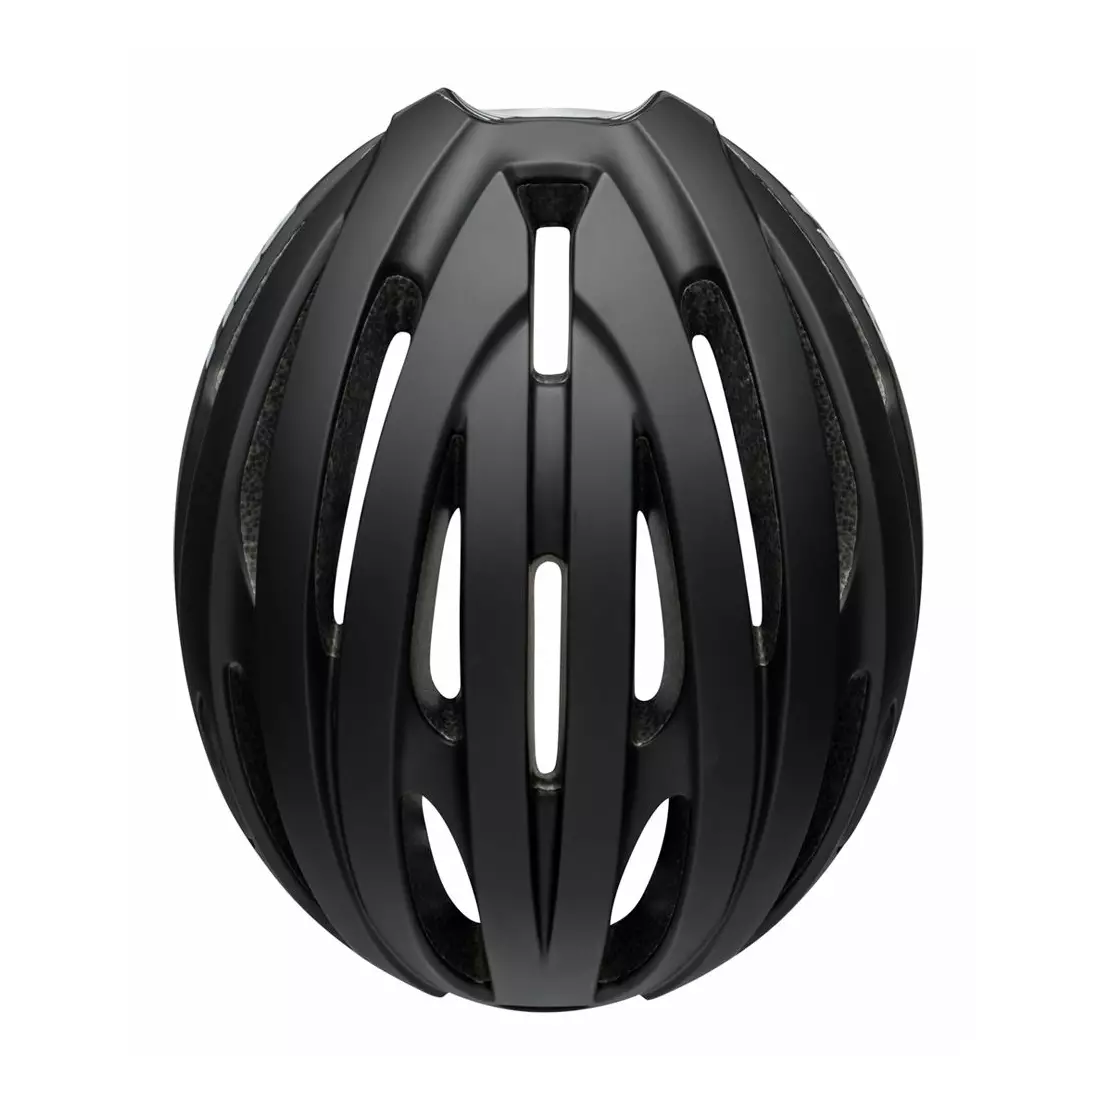 BELL cască de bicicletă de șosea avenue matte gloss black BEL-7115257